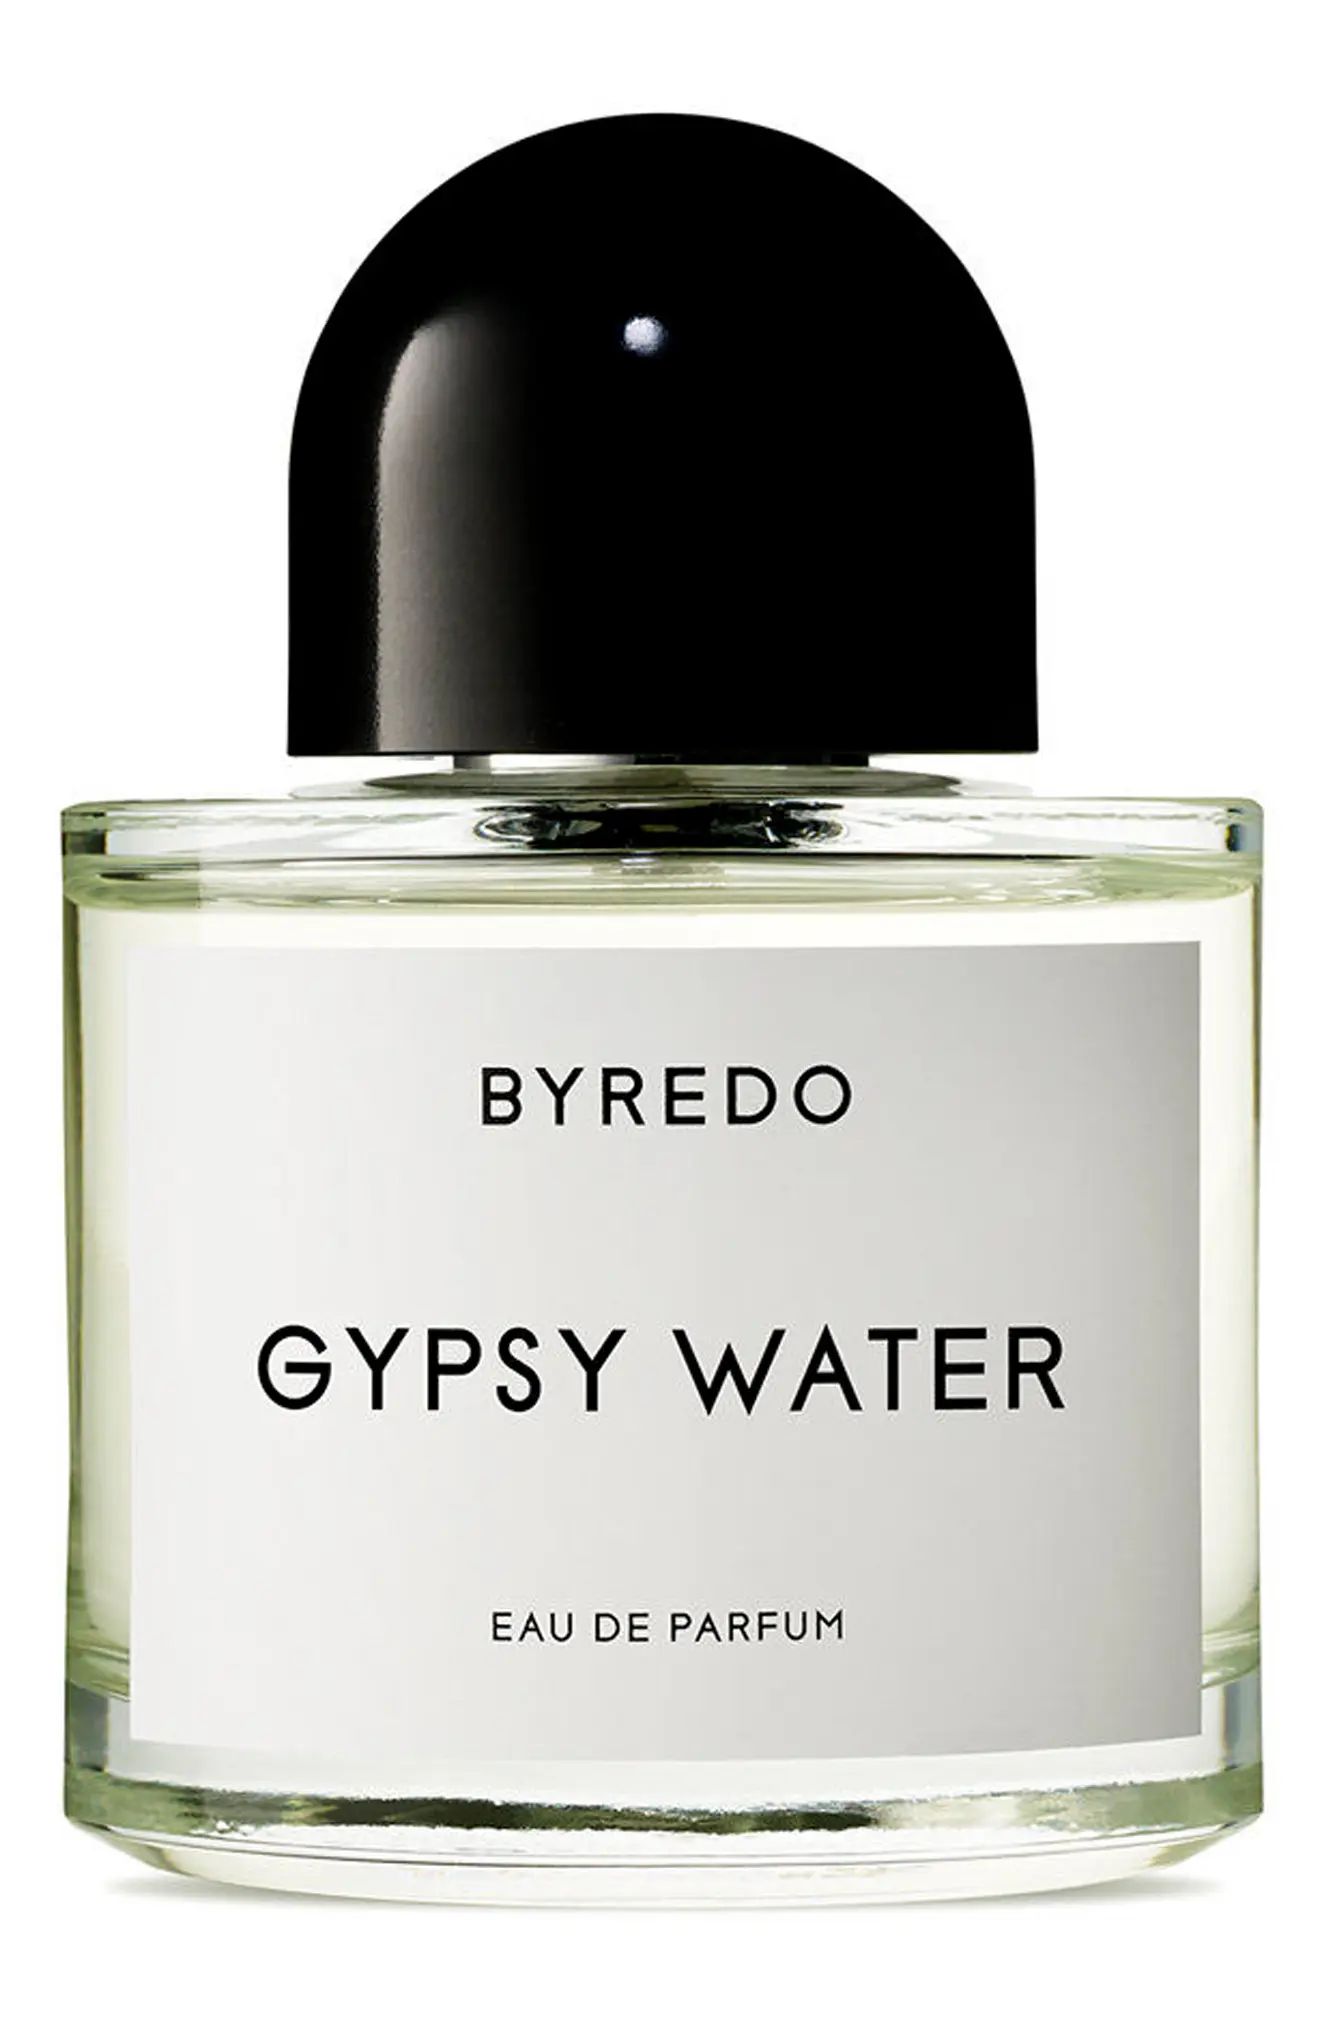 BYREDO Gypsy Water Eau de Parfum at Nordstrom, Size 1.7 Oz | Nordstrom